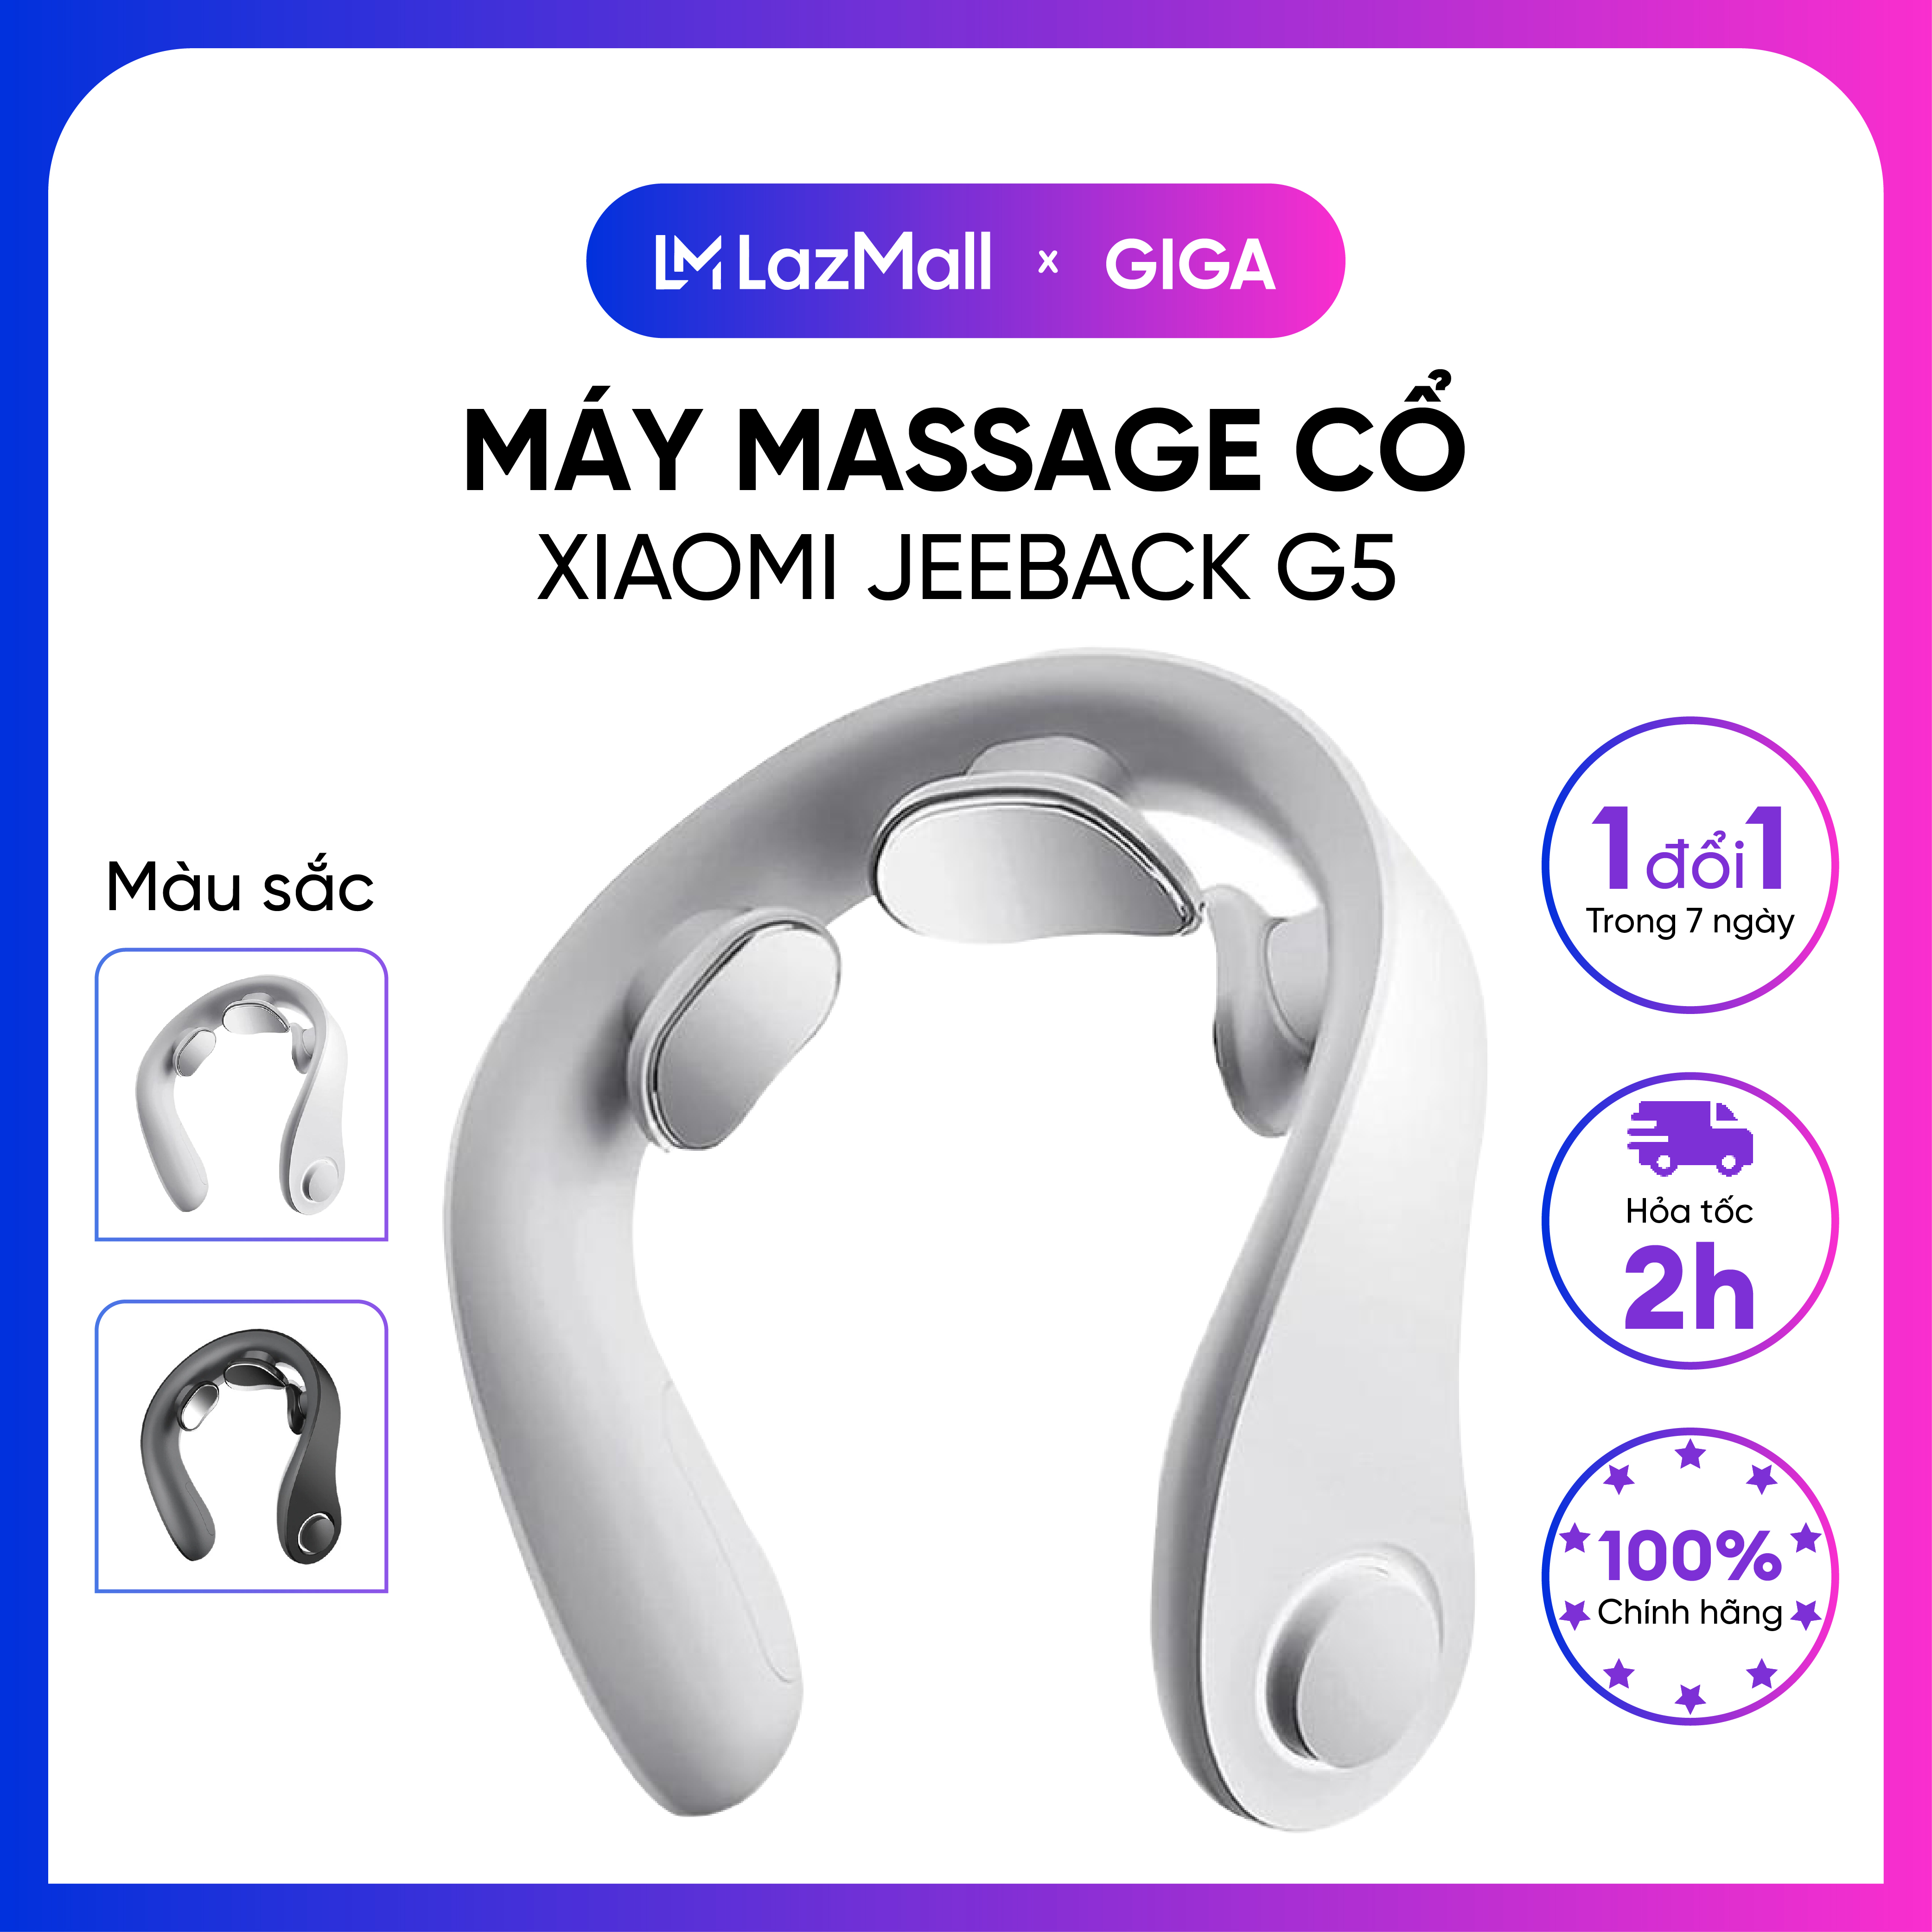 Máy massage cổ thông minh Xiaomi Jeeback G5